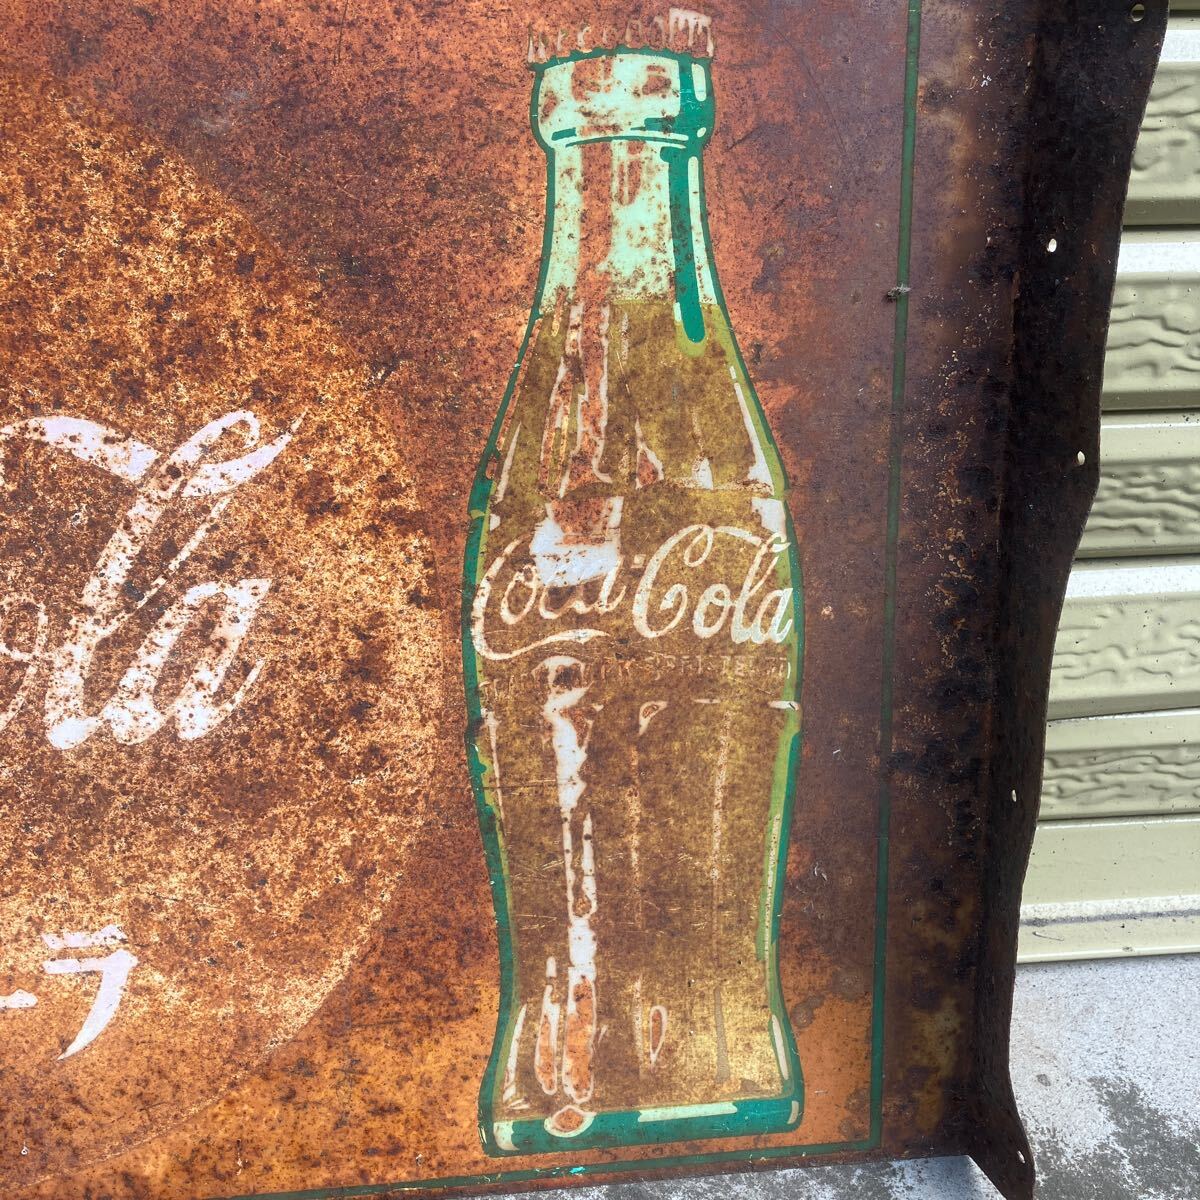 Coca-Cola コカコーラ DRINK 飲みましょう コカコーラ ホーロー 看板 レトロ アンティーク の画像6